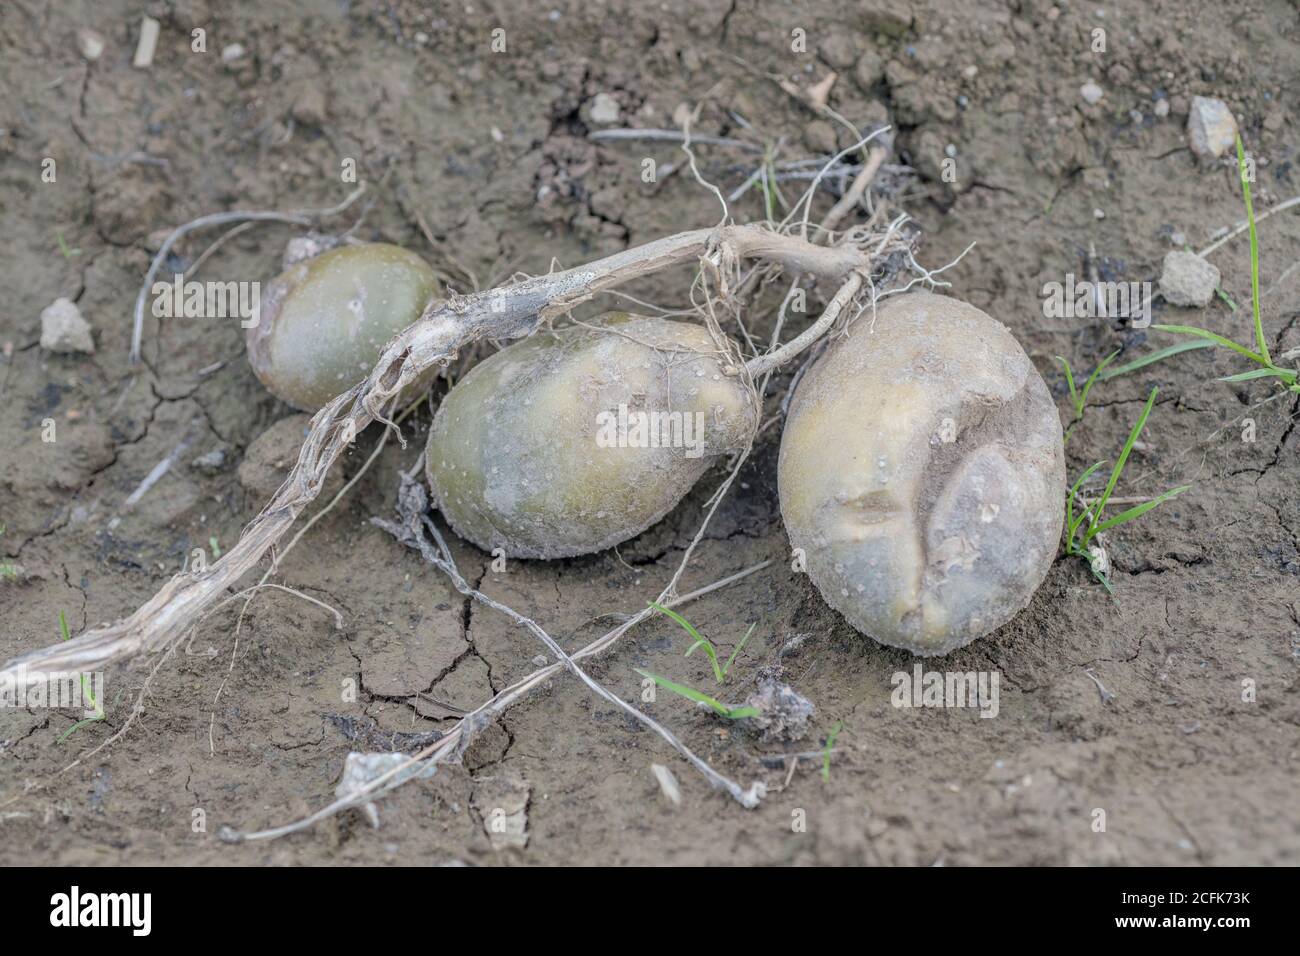 Krankheitsschäden / kranke Kartoffeln liegen auf dem Boden auf dem Feld. Eine zeigt einige Wachstumsrisse, andere haben milde Kartoffelkrankheit. Stockfoto